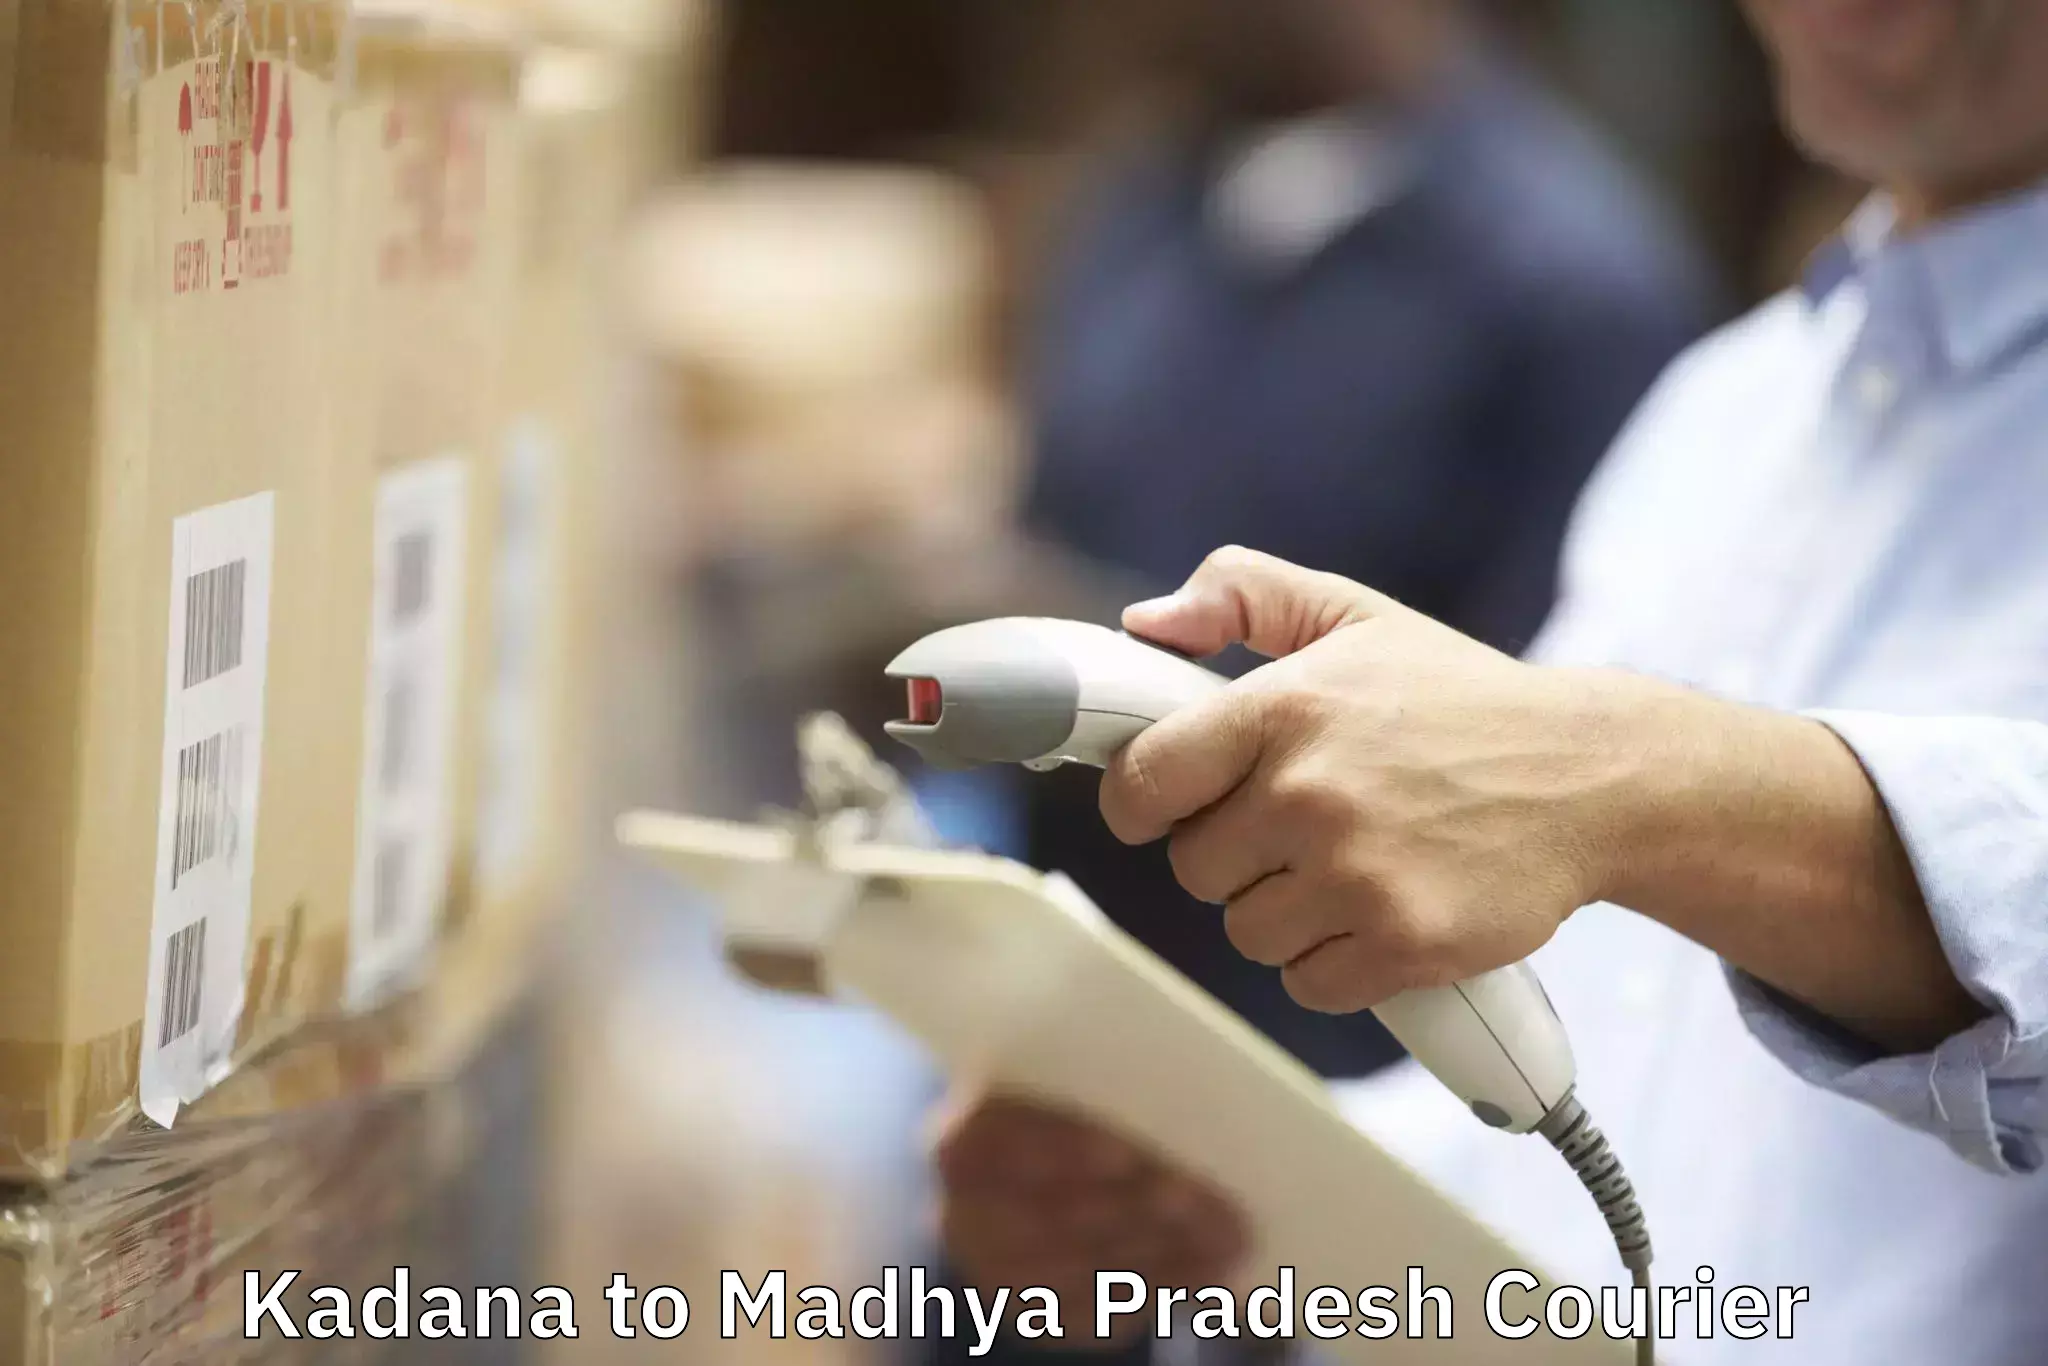 Furniture moving experts Kadana to Madhya Pradesh